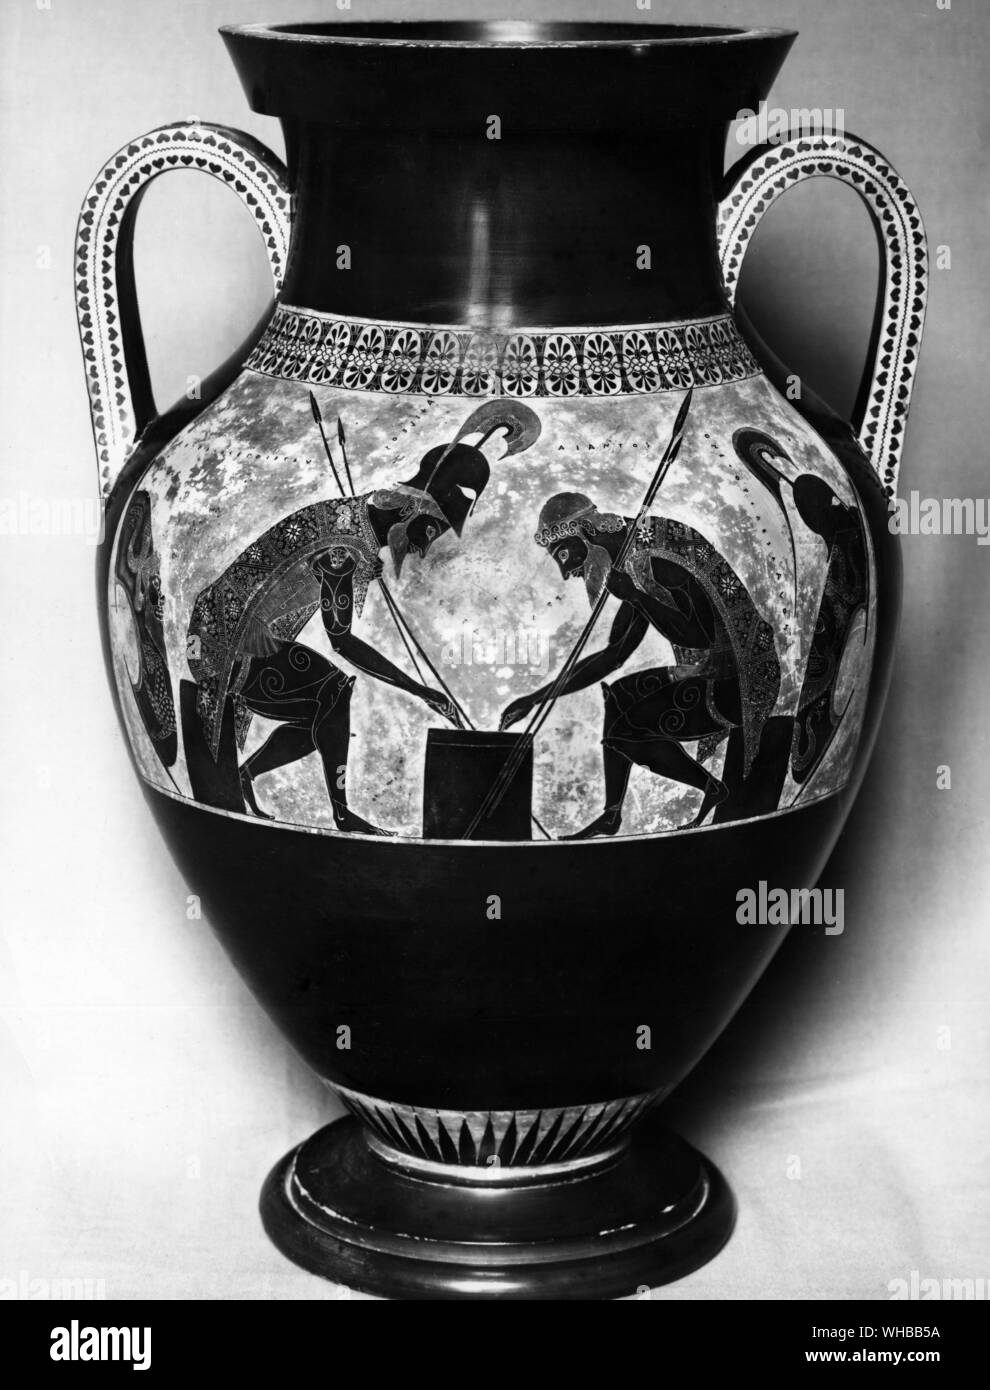 Amphora des Exekias, c 540 - 530 BC. Die Vatikanischen Museen und Galerien, Rom, Italien. Stockfoto